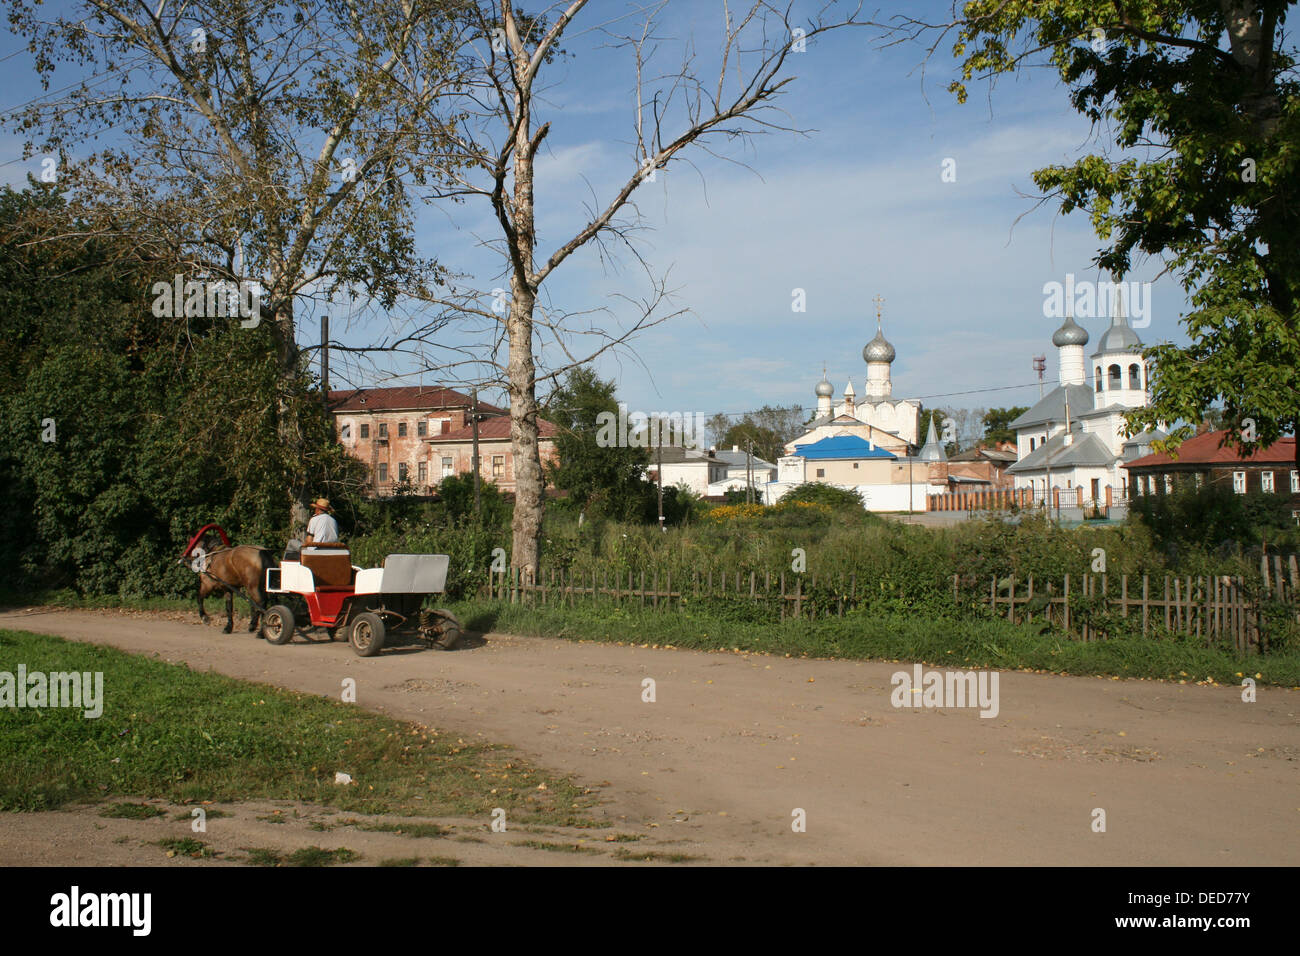 Un uomo su un cavallo e il carrello passa in un antico monastero russo a Rostov Velikiy, una città a Mosca del cosiddetto anello d'oro. Foto Stock